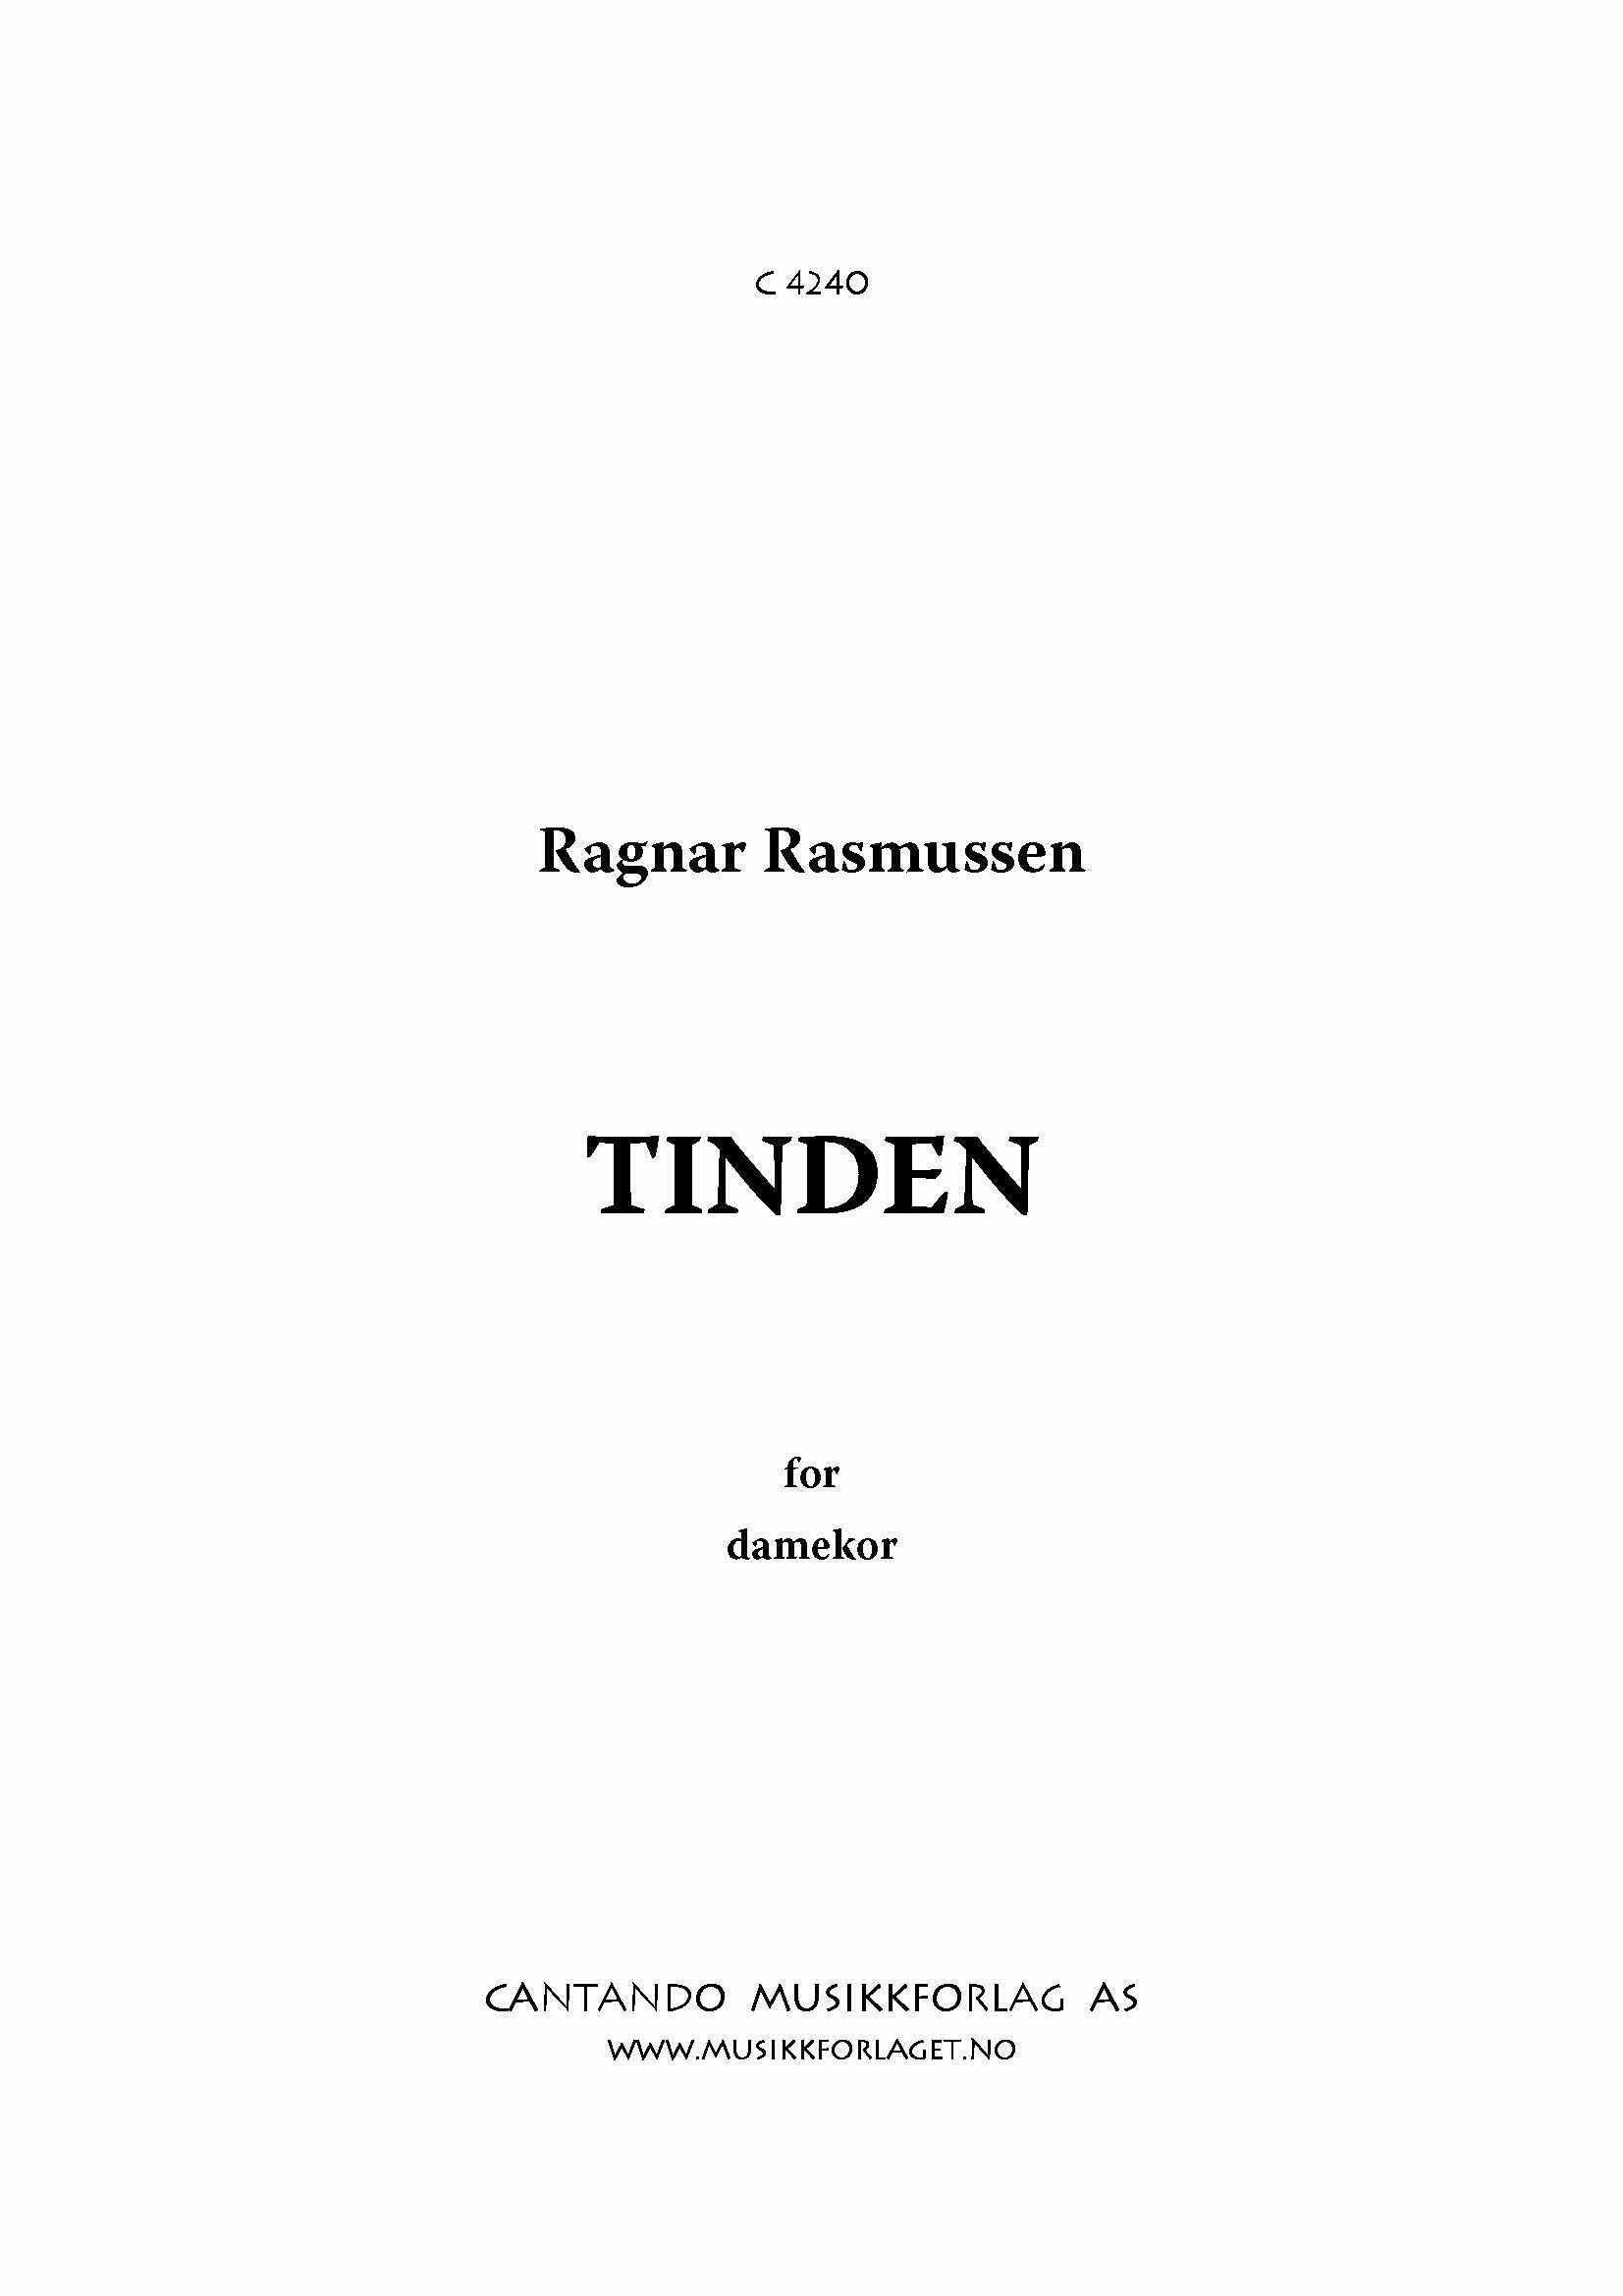 Tinden - (Ragnar Rasmussen)